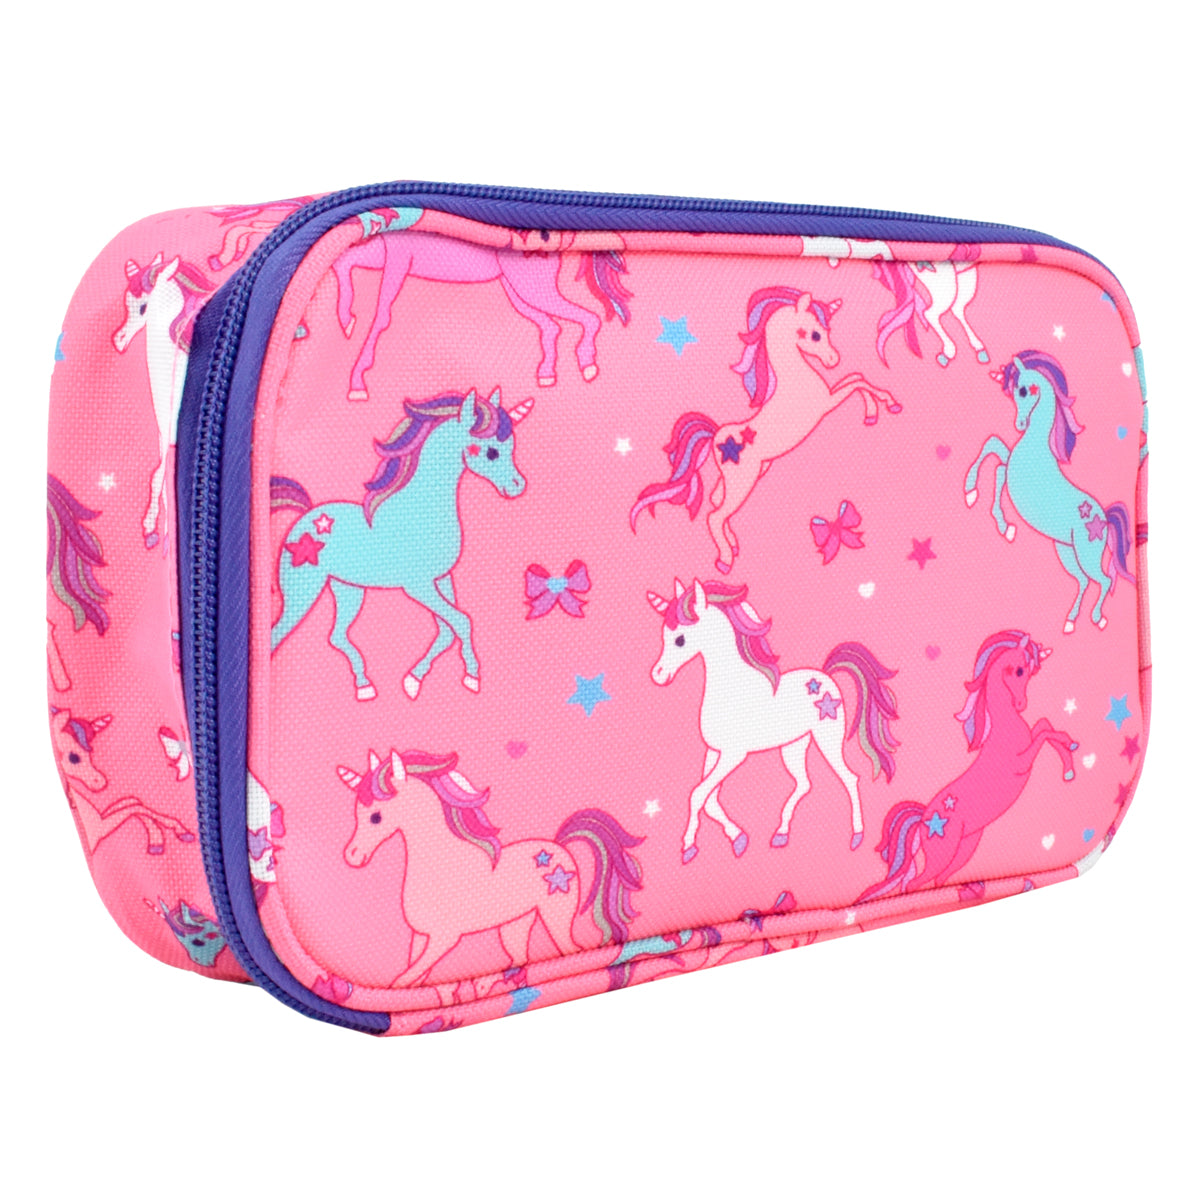 Lapicera escolar para niña Peschelle grande diseño de unicornios color rosa